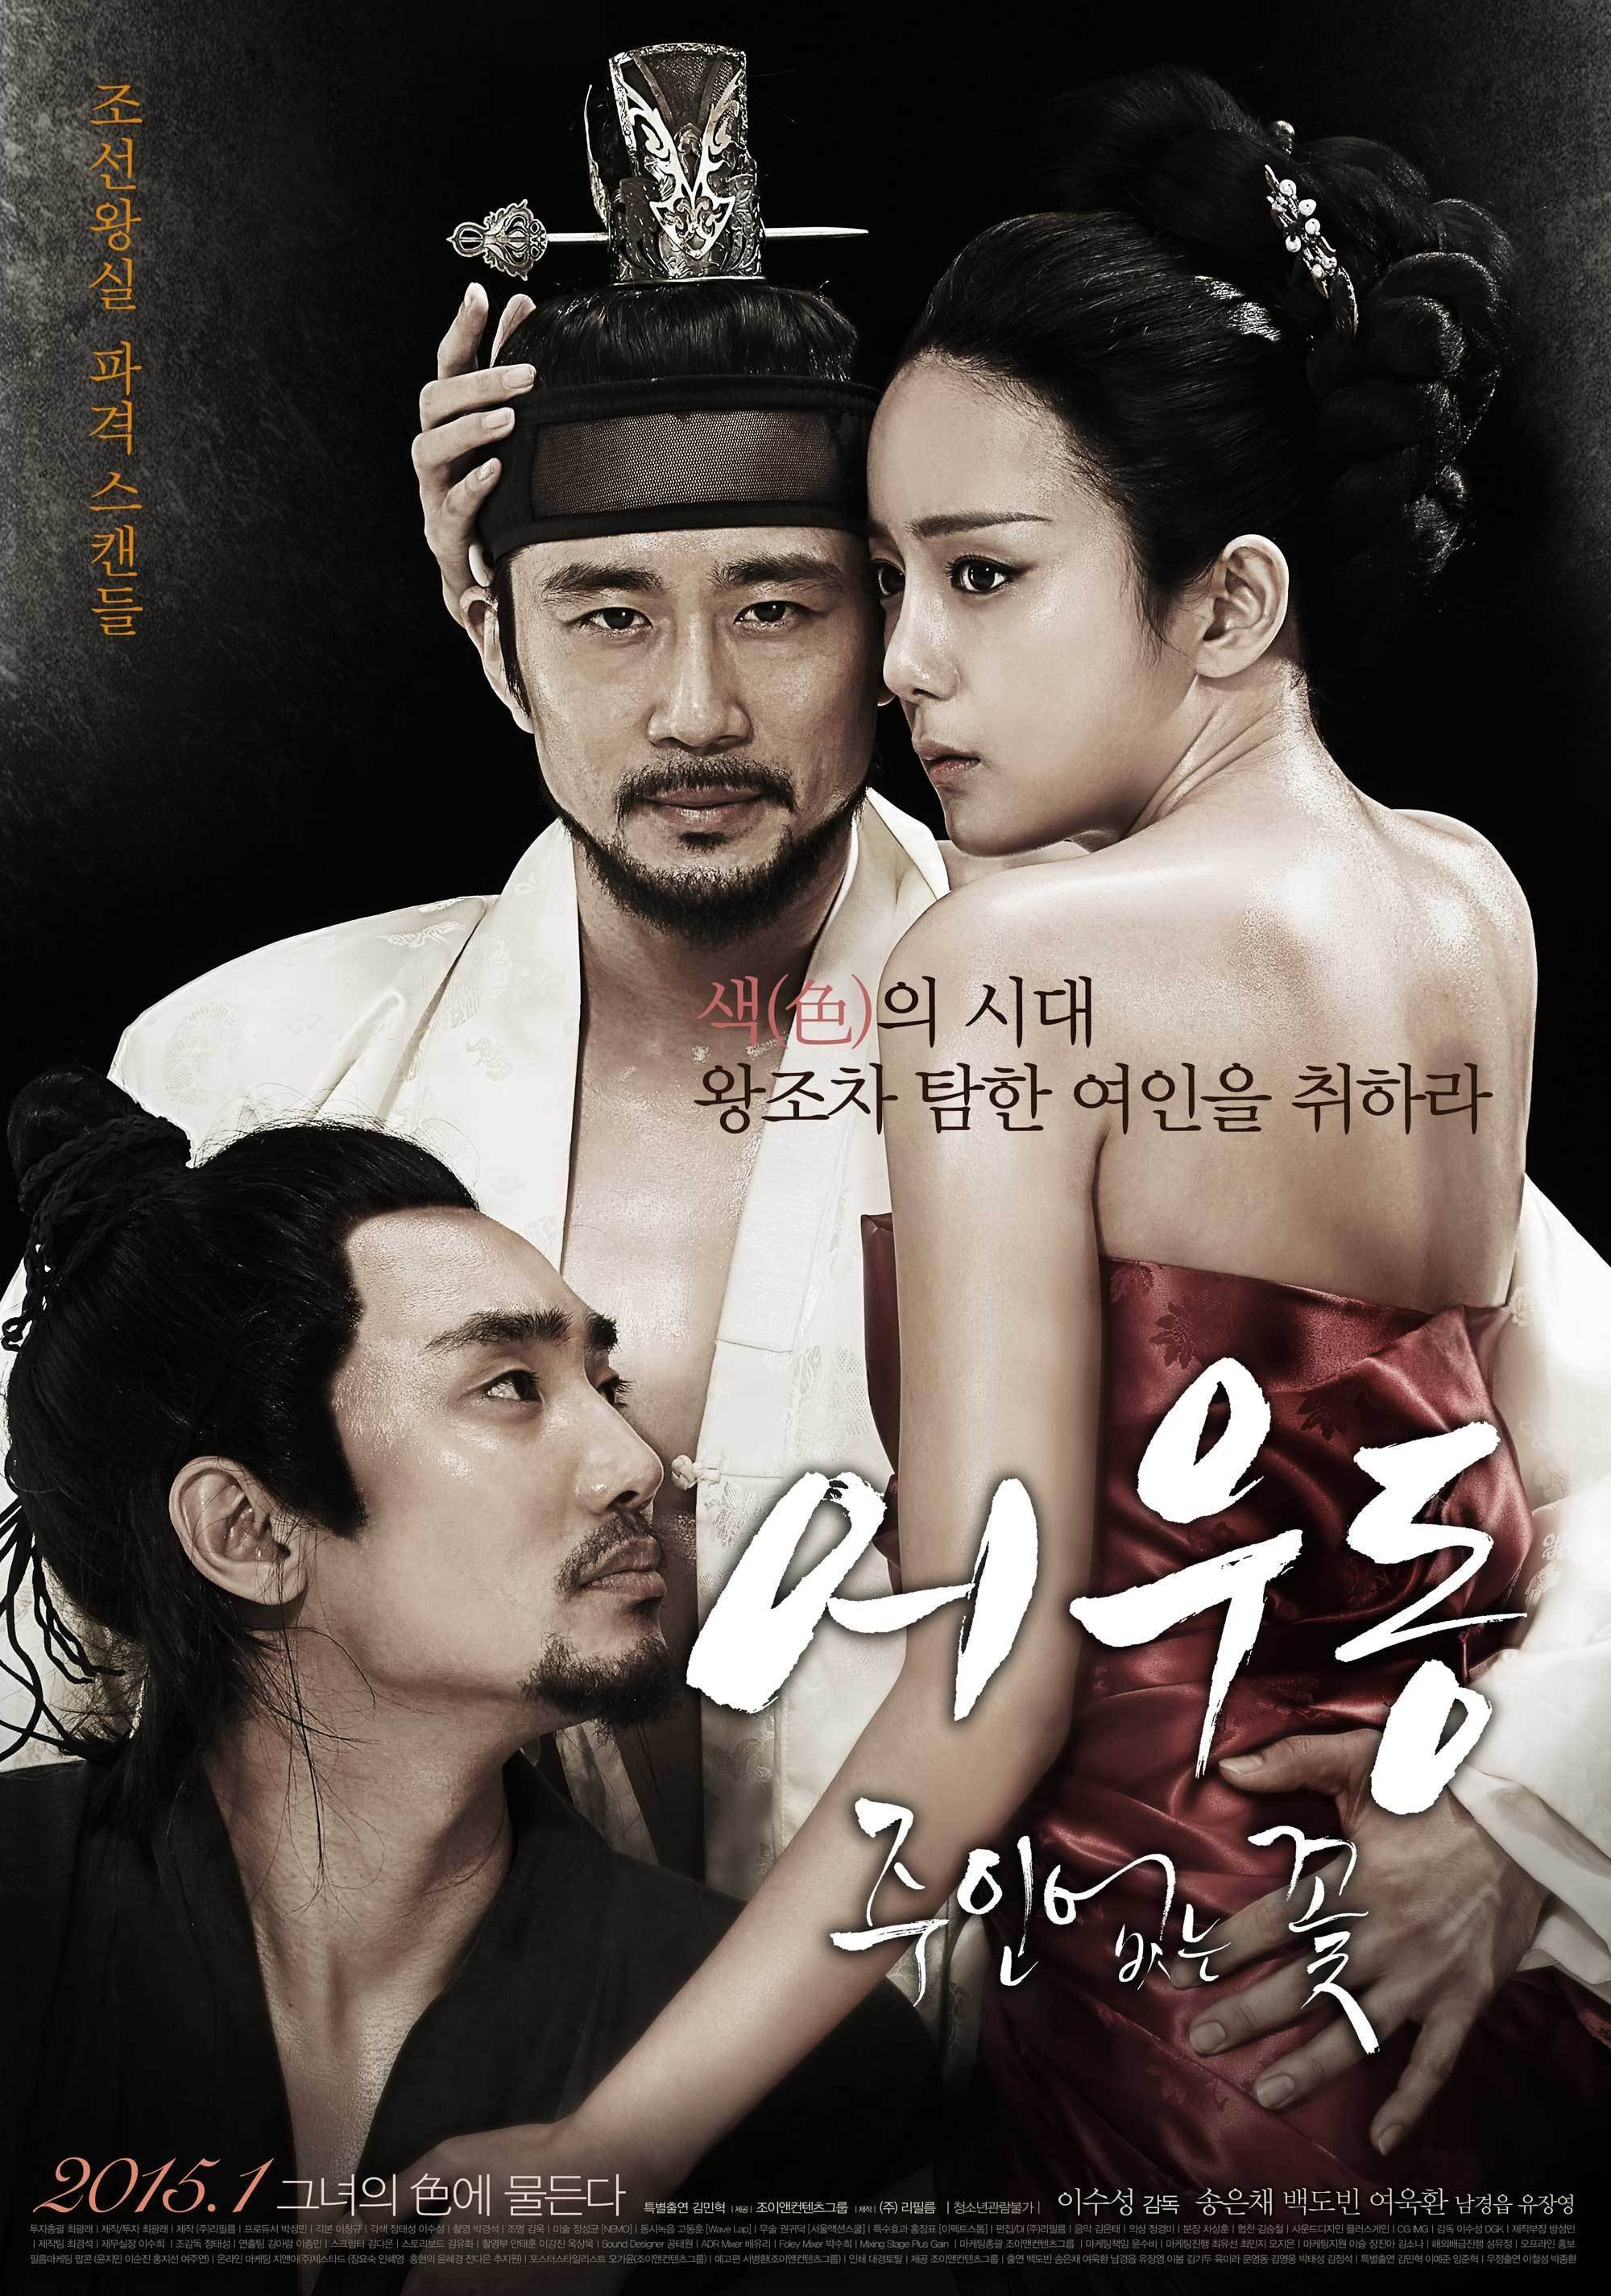 53 Best Pictures Oldboy Korean Movie Full / Korean movies opening today 2015/01/29 in Korea ...